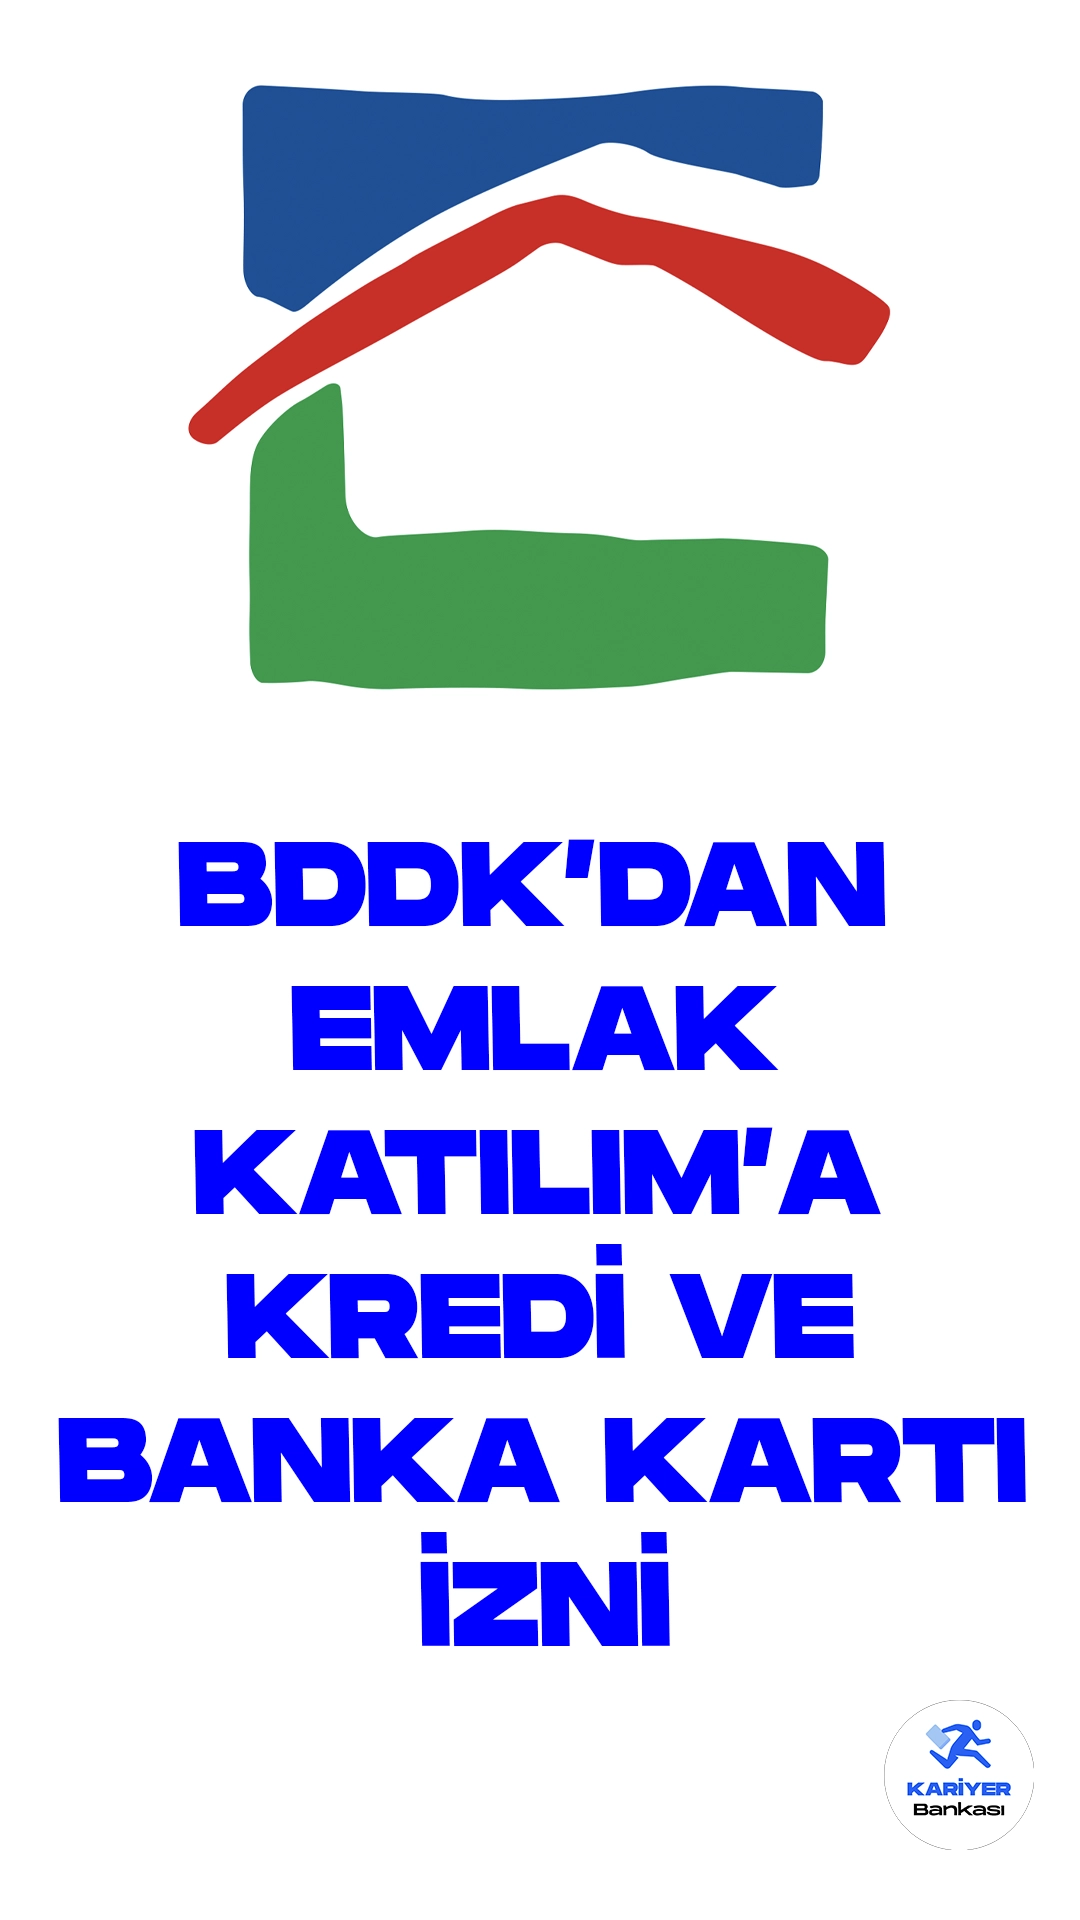 Bankacılık Denetleme ve Düzenleme Kurulu (BDDK), Türkiye Emlak Katılım Bankası'na önemli bir yetki tanıdı. Bu kapsamda, bankaya kredi ve banka kartı sistemi kurma izni verildi. BDDK'nın bu kararı, Resmi Gazete'nin bugünkü sayısında resmi olarak yayımlandı.